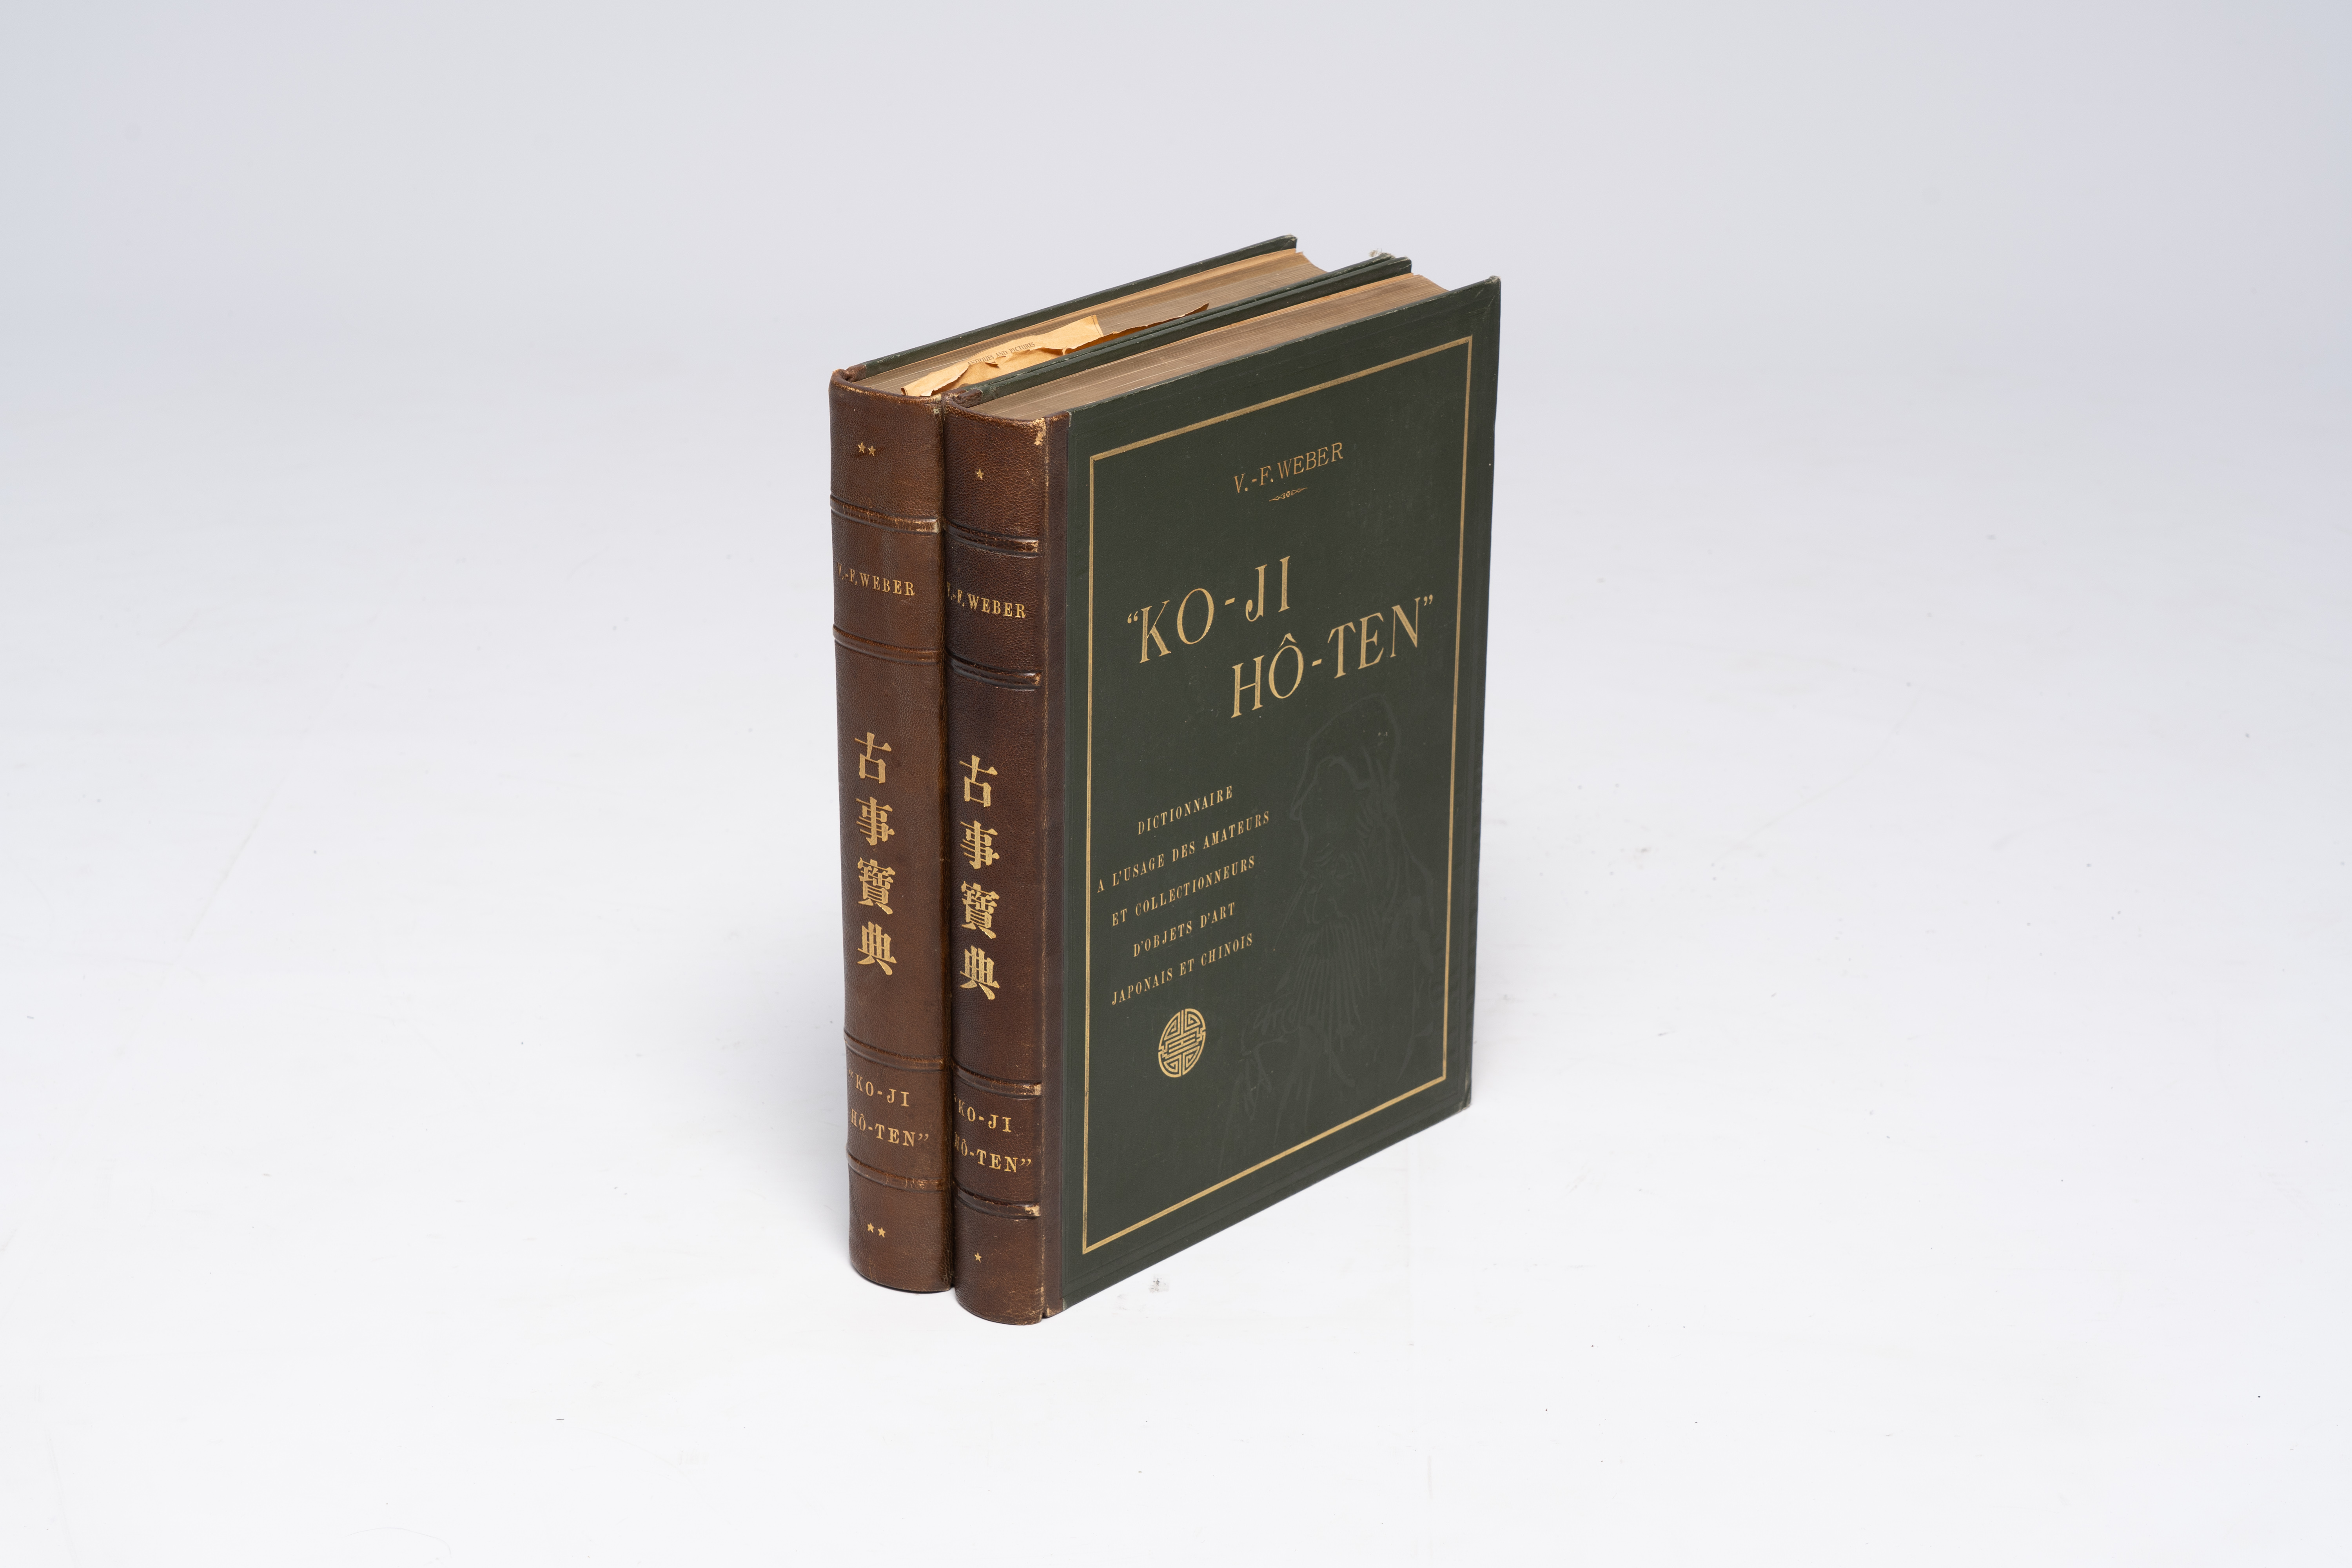 V.-F. Weber, Ko-Ji HÃ´-ten. Dictionnaire a l'usage des amateurs et collectionneurs d'objets d'art ja